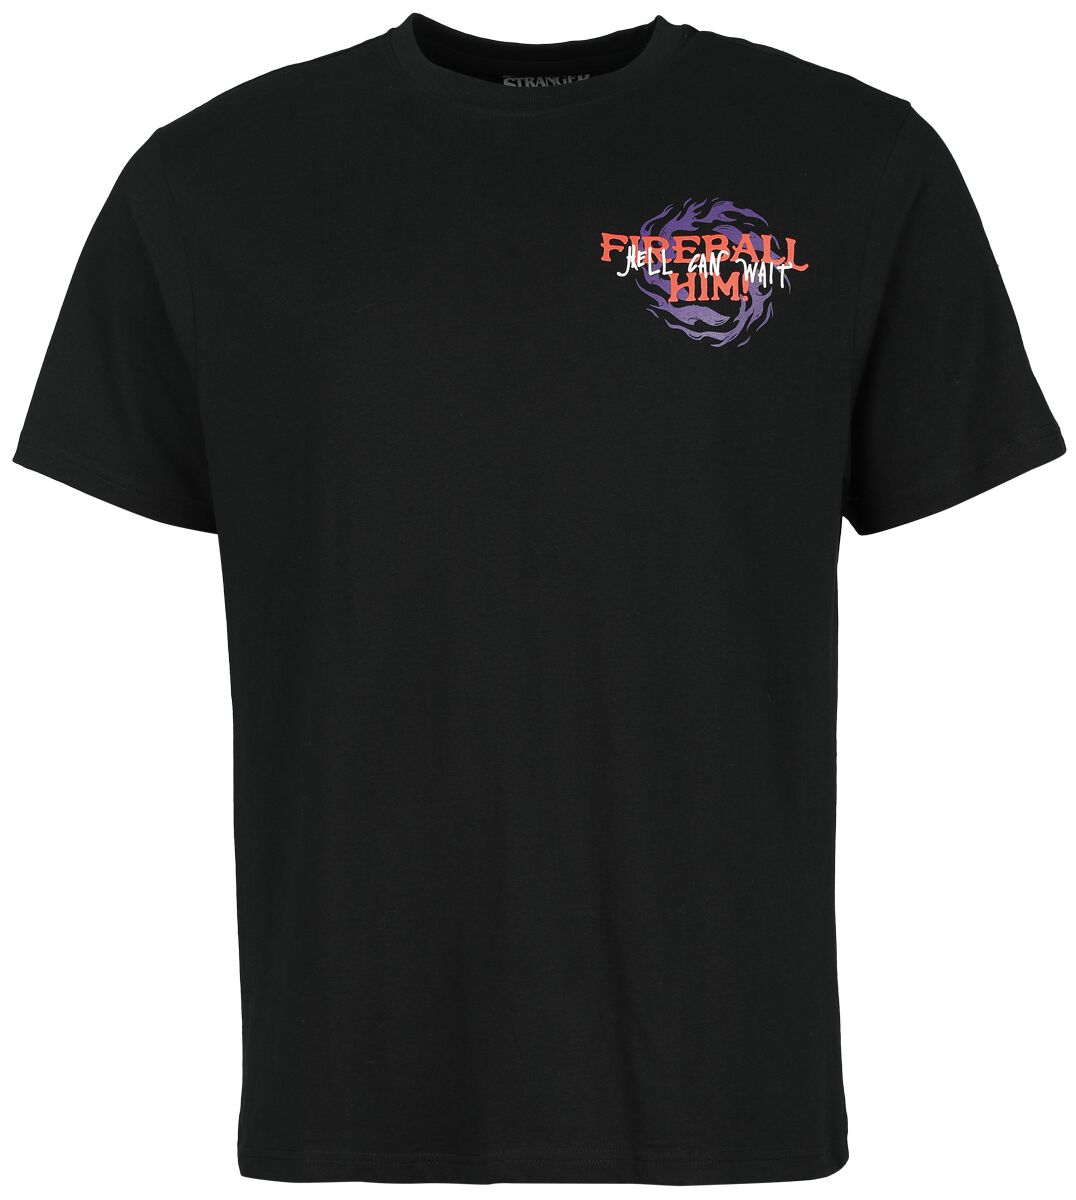 Stranger Things T-Shirt - Fireball Him - S bis L - für Männer - Größe M - schwarz  - Lizenzierter Fanartikel